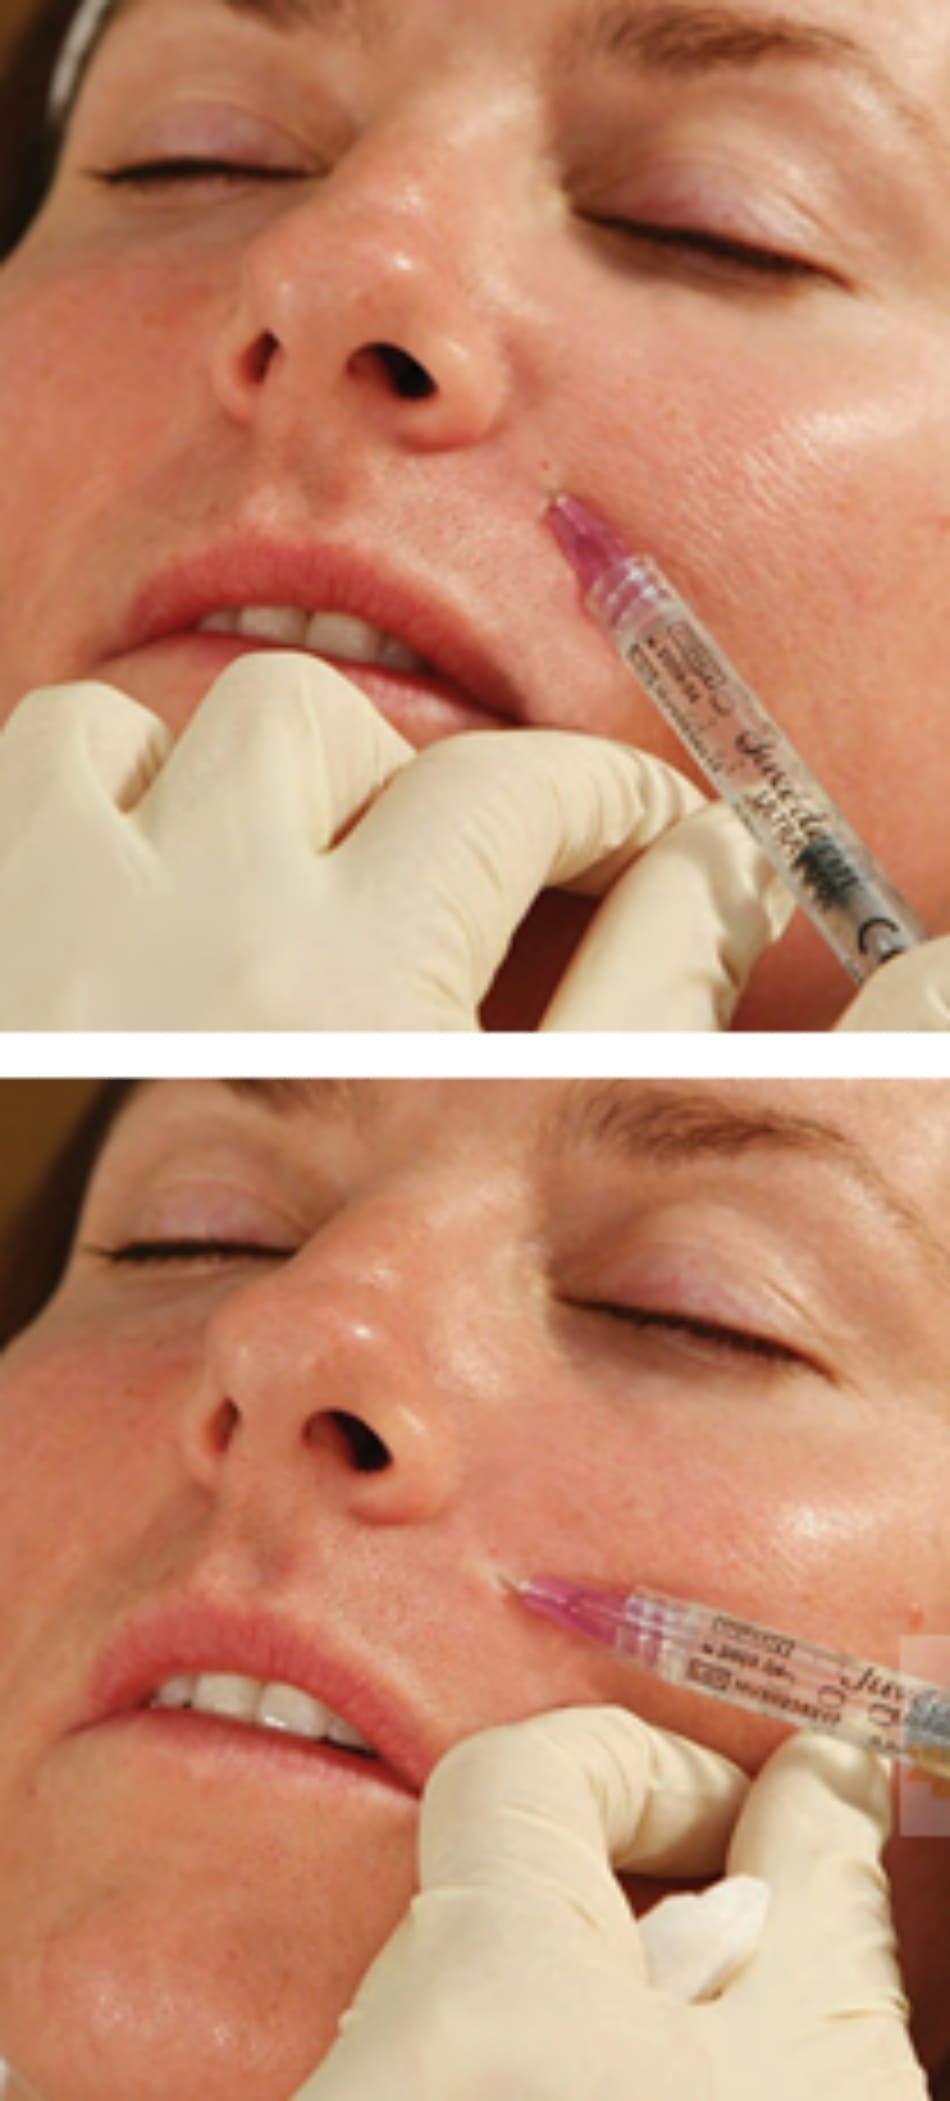 FIGURE 6 ● Điểm tiêm thứ ba cho điều trị làm đầy da nếp gấp mũi - má (A) với kỹ thuật hình quạt ở giữa (B).